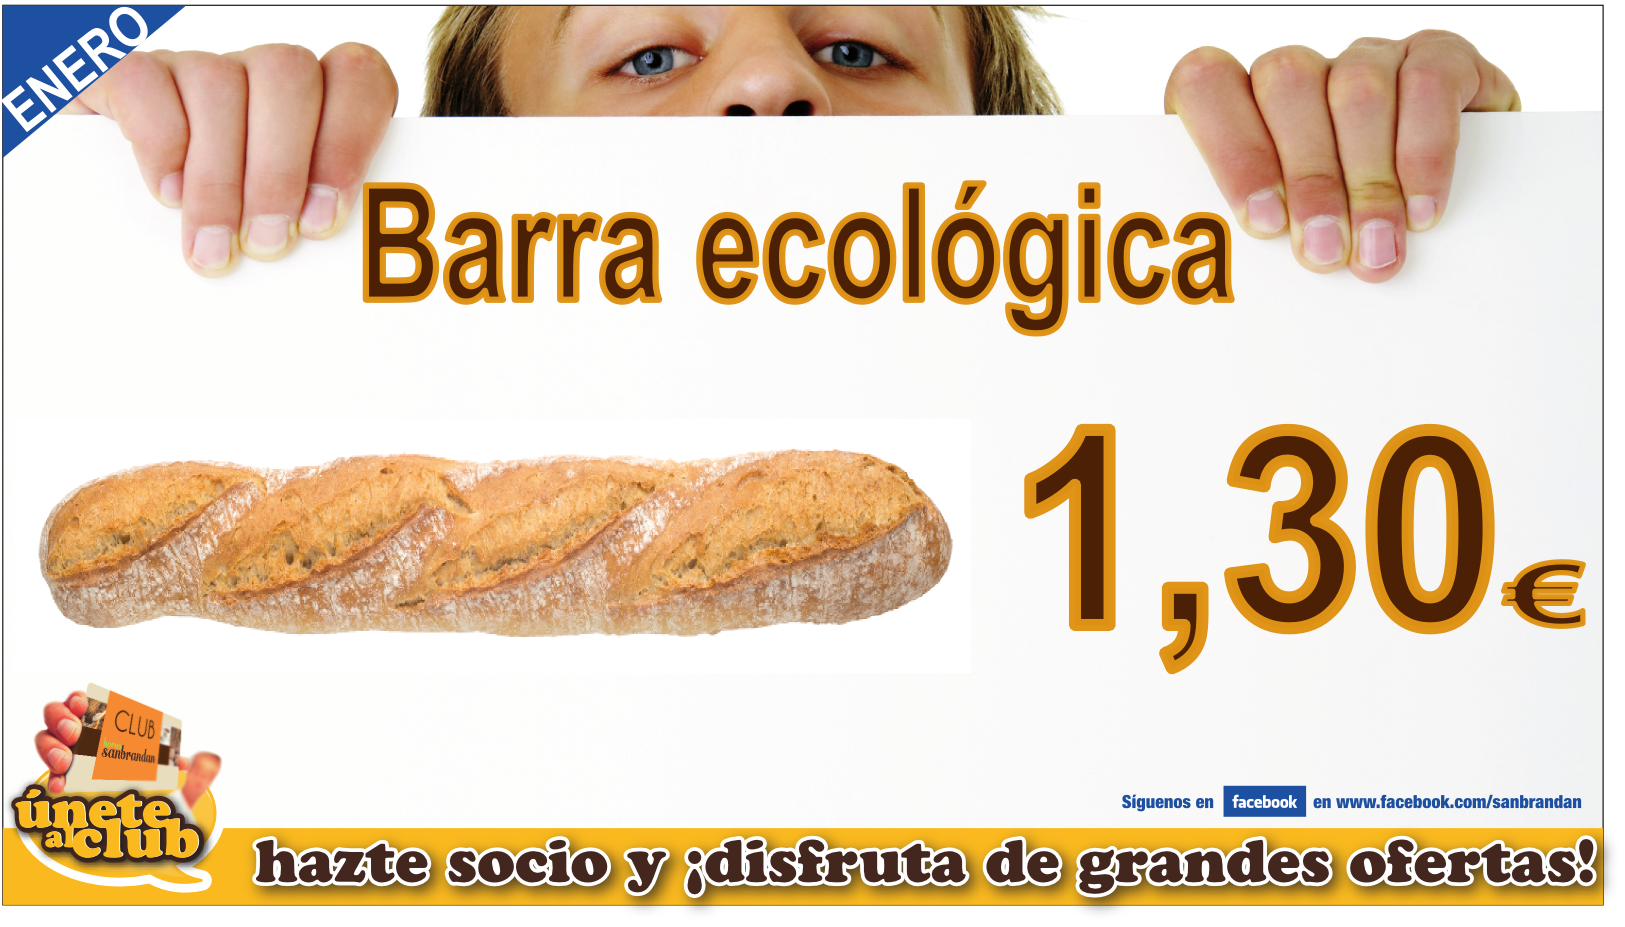 Barra ecológica 1,30 €